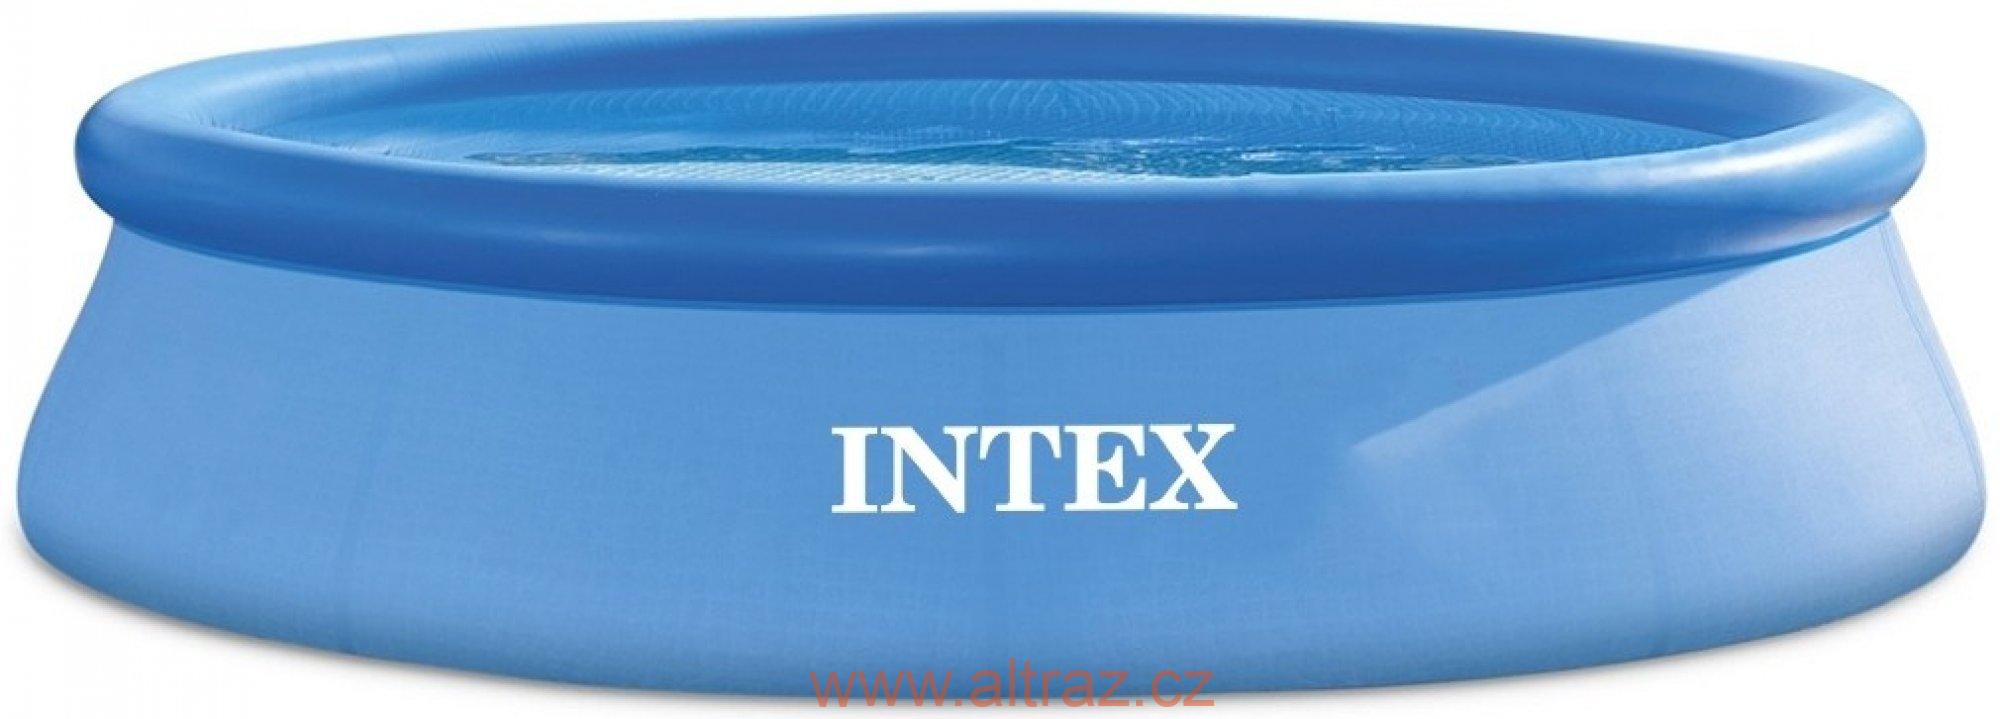 Intex Bazén 2,44 x 0,61 m 28106